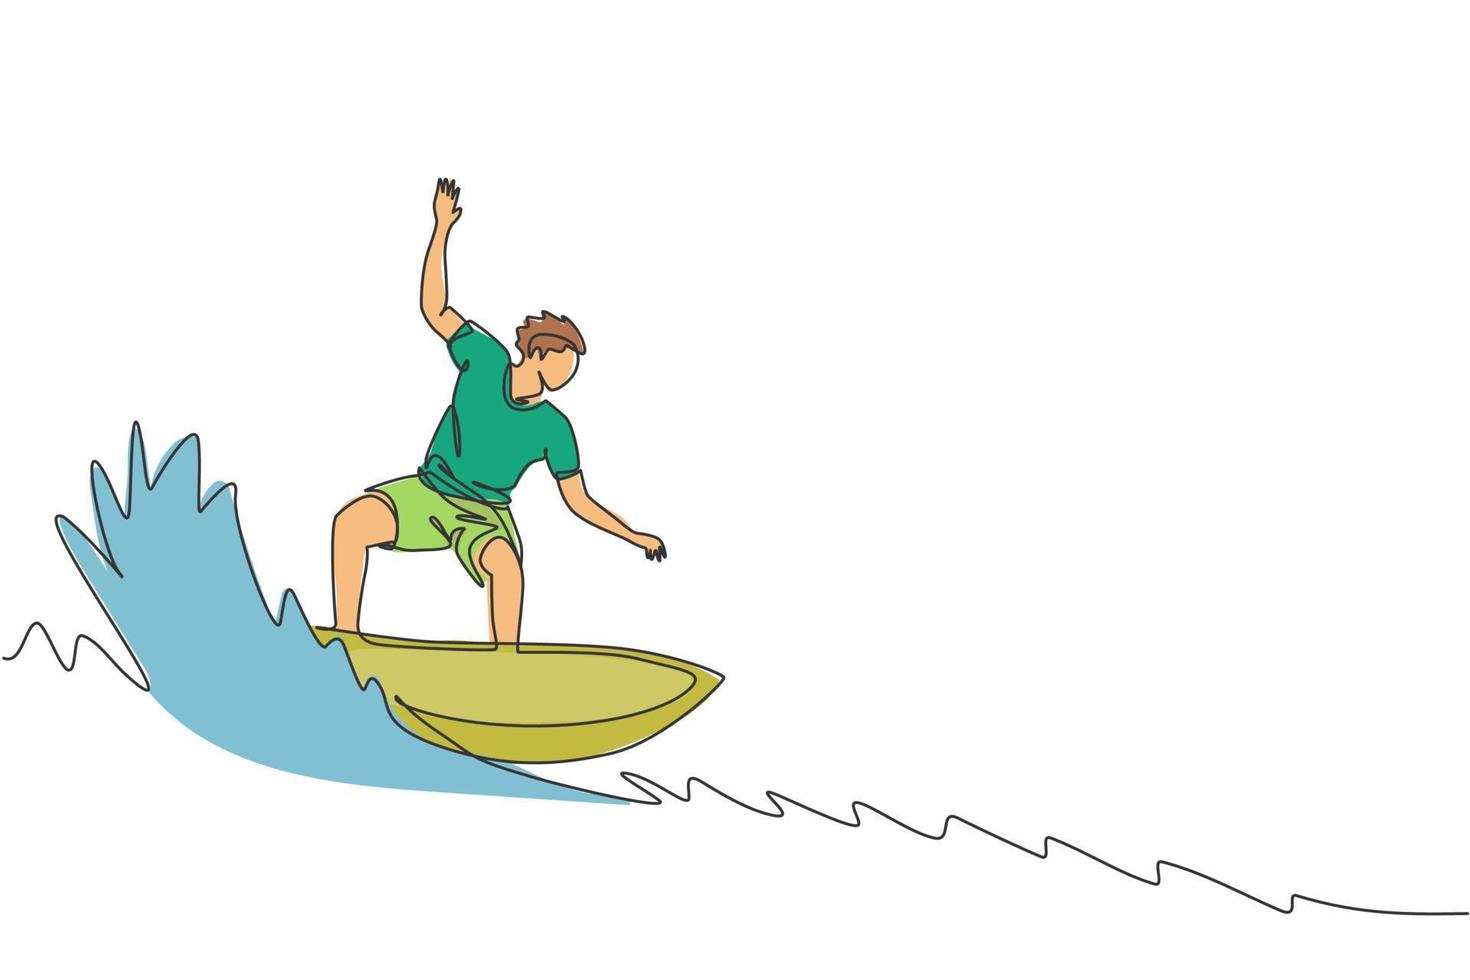 een enkele lijntekening van jonge sportieve surfer man rijden op grote golven vat in surfen strand paradijs grafische vectorillustratie. extreem watersportconcept. modern ononderbroken lijntekeningontwerp vector